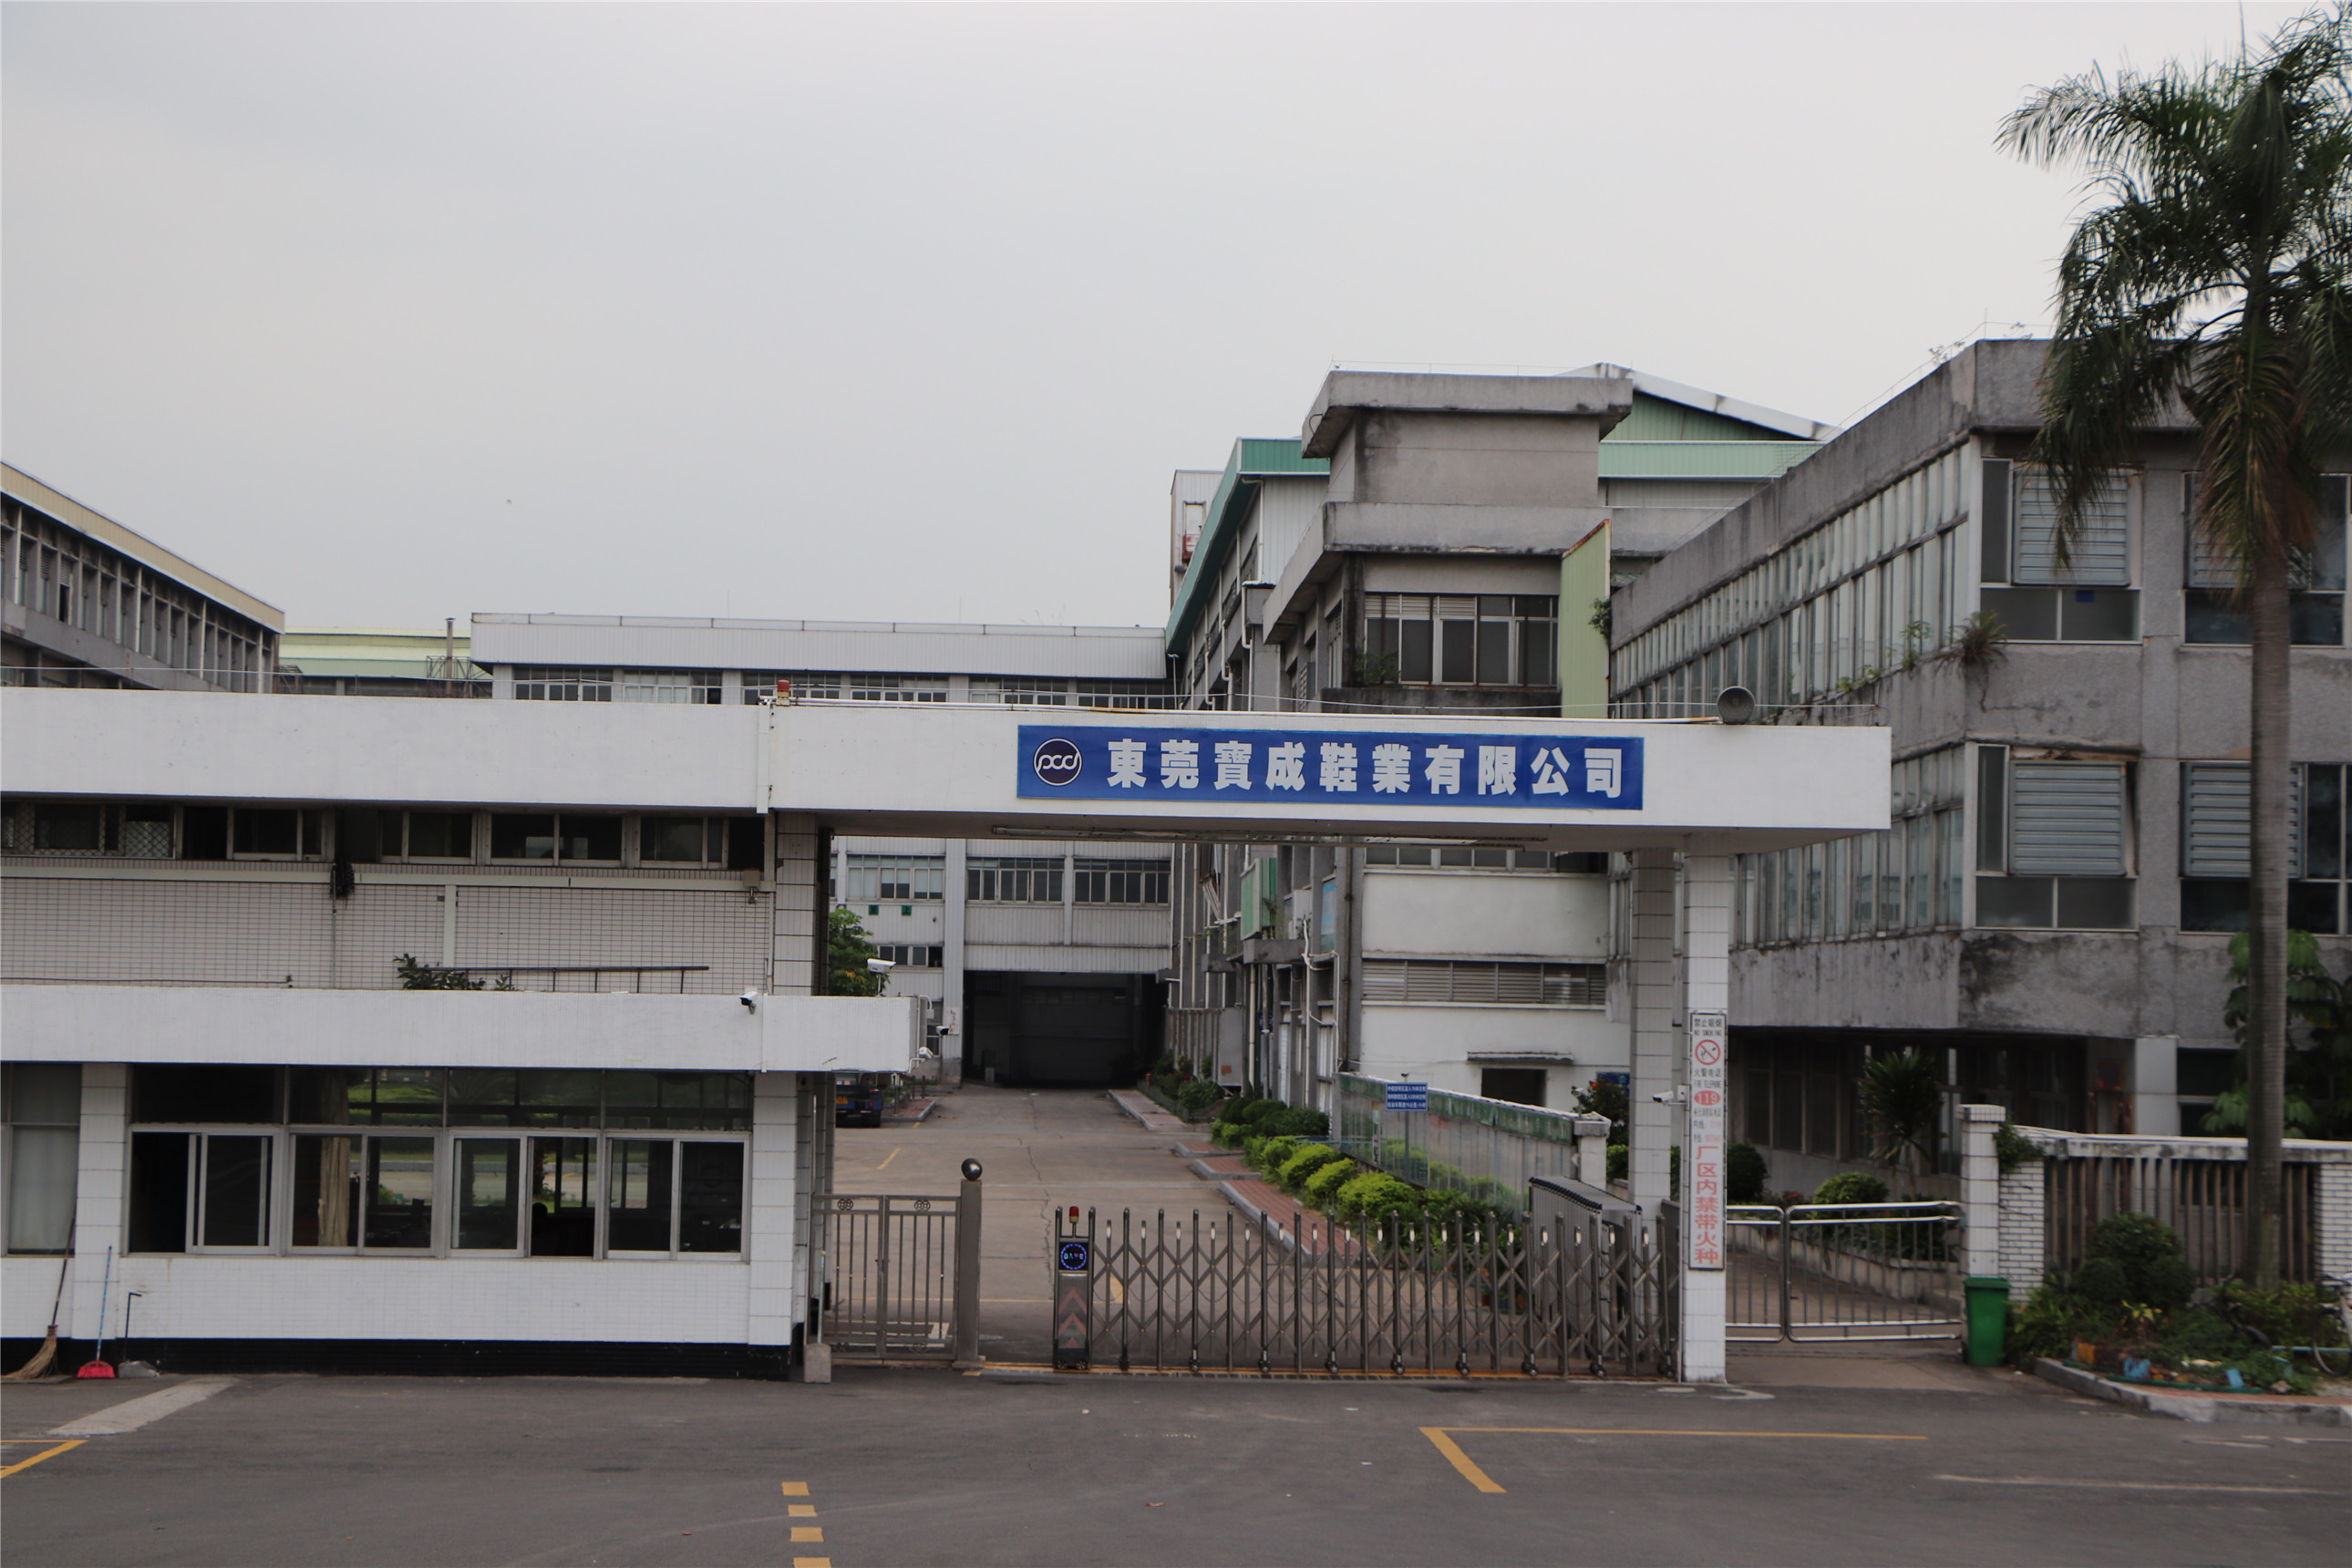 实拍东莞市高埗镇曾经几万人的裕元鞋厂如今只剩下一栋栋空楼了